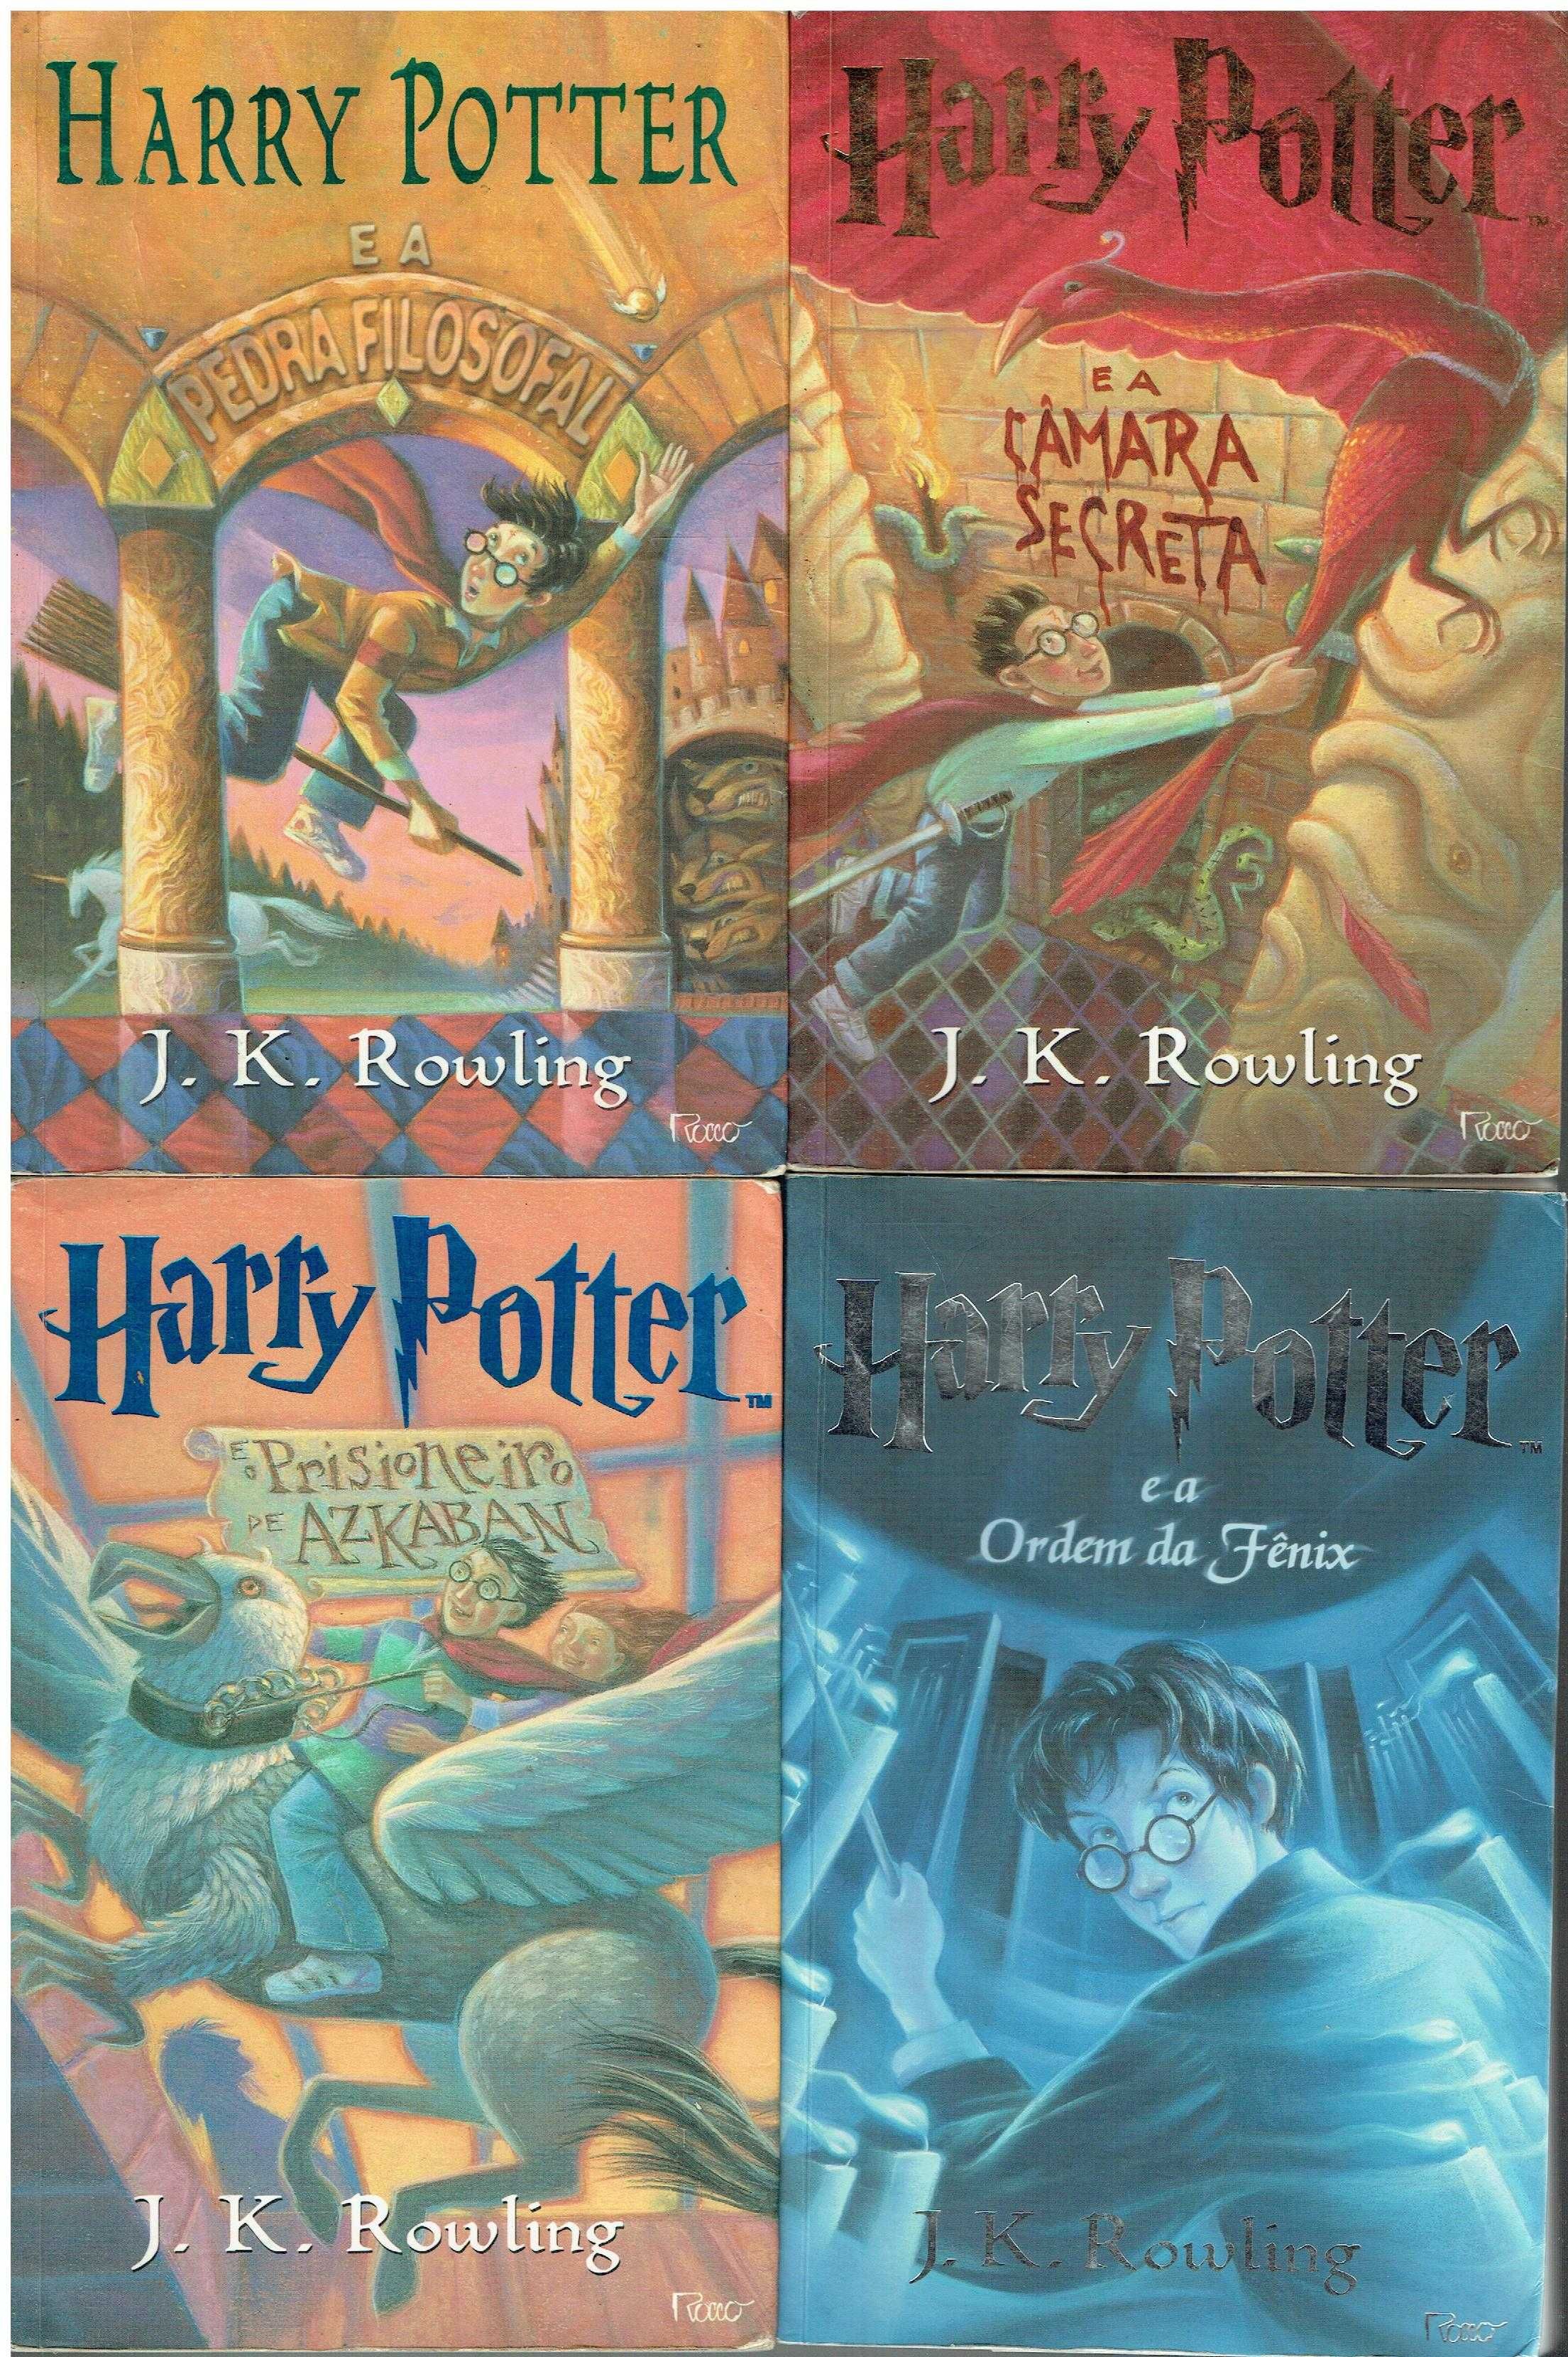 11850

Livros do Harry Potter